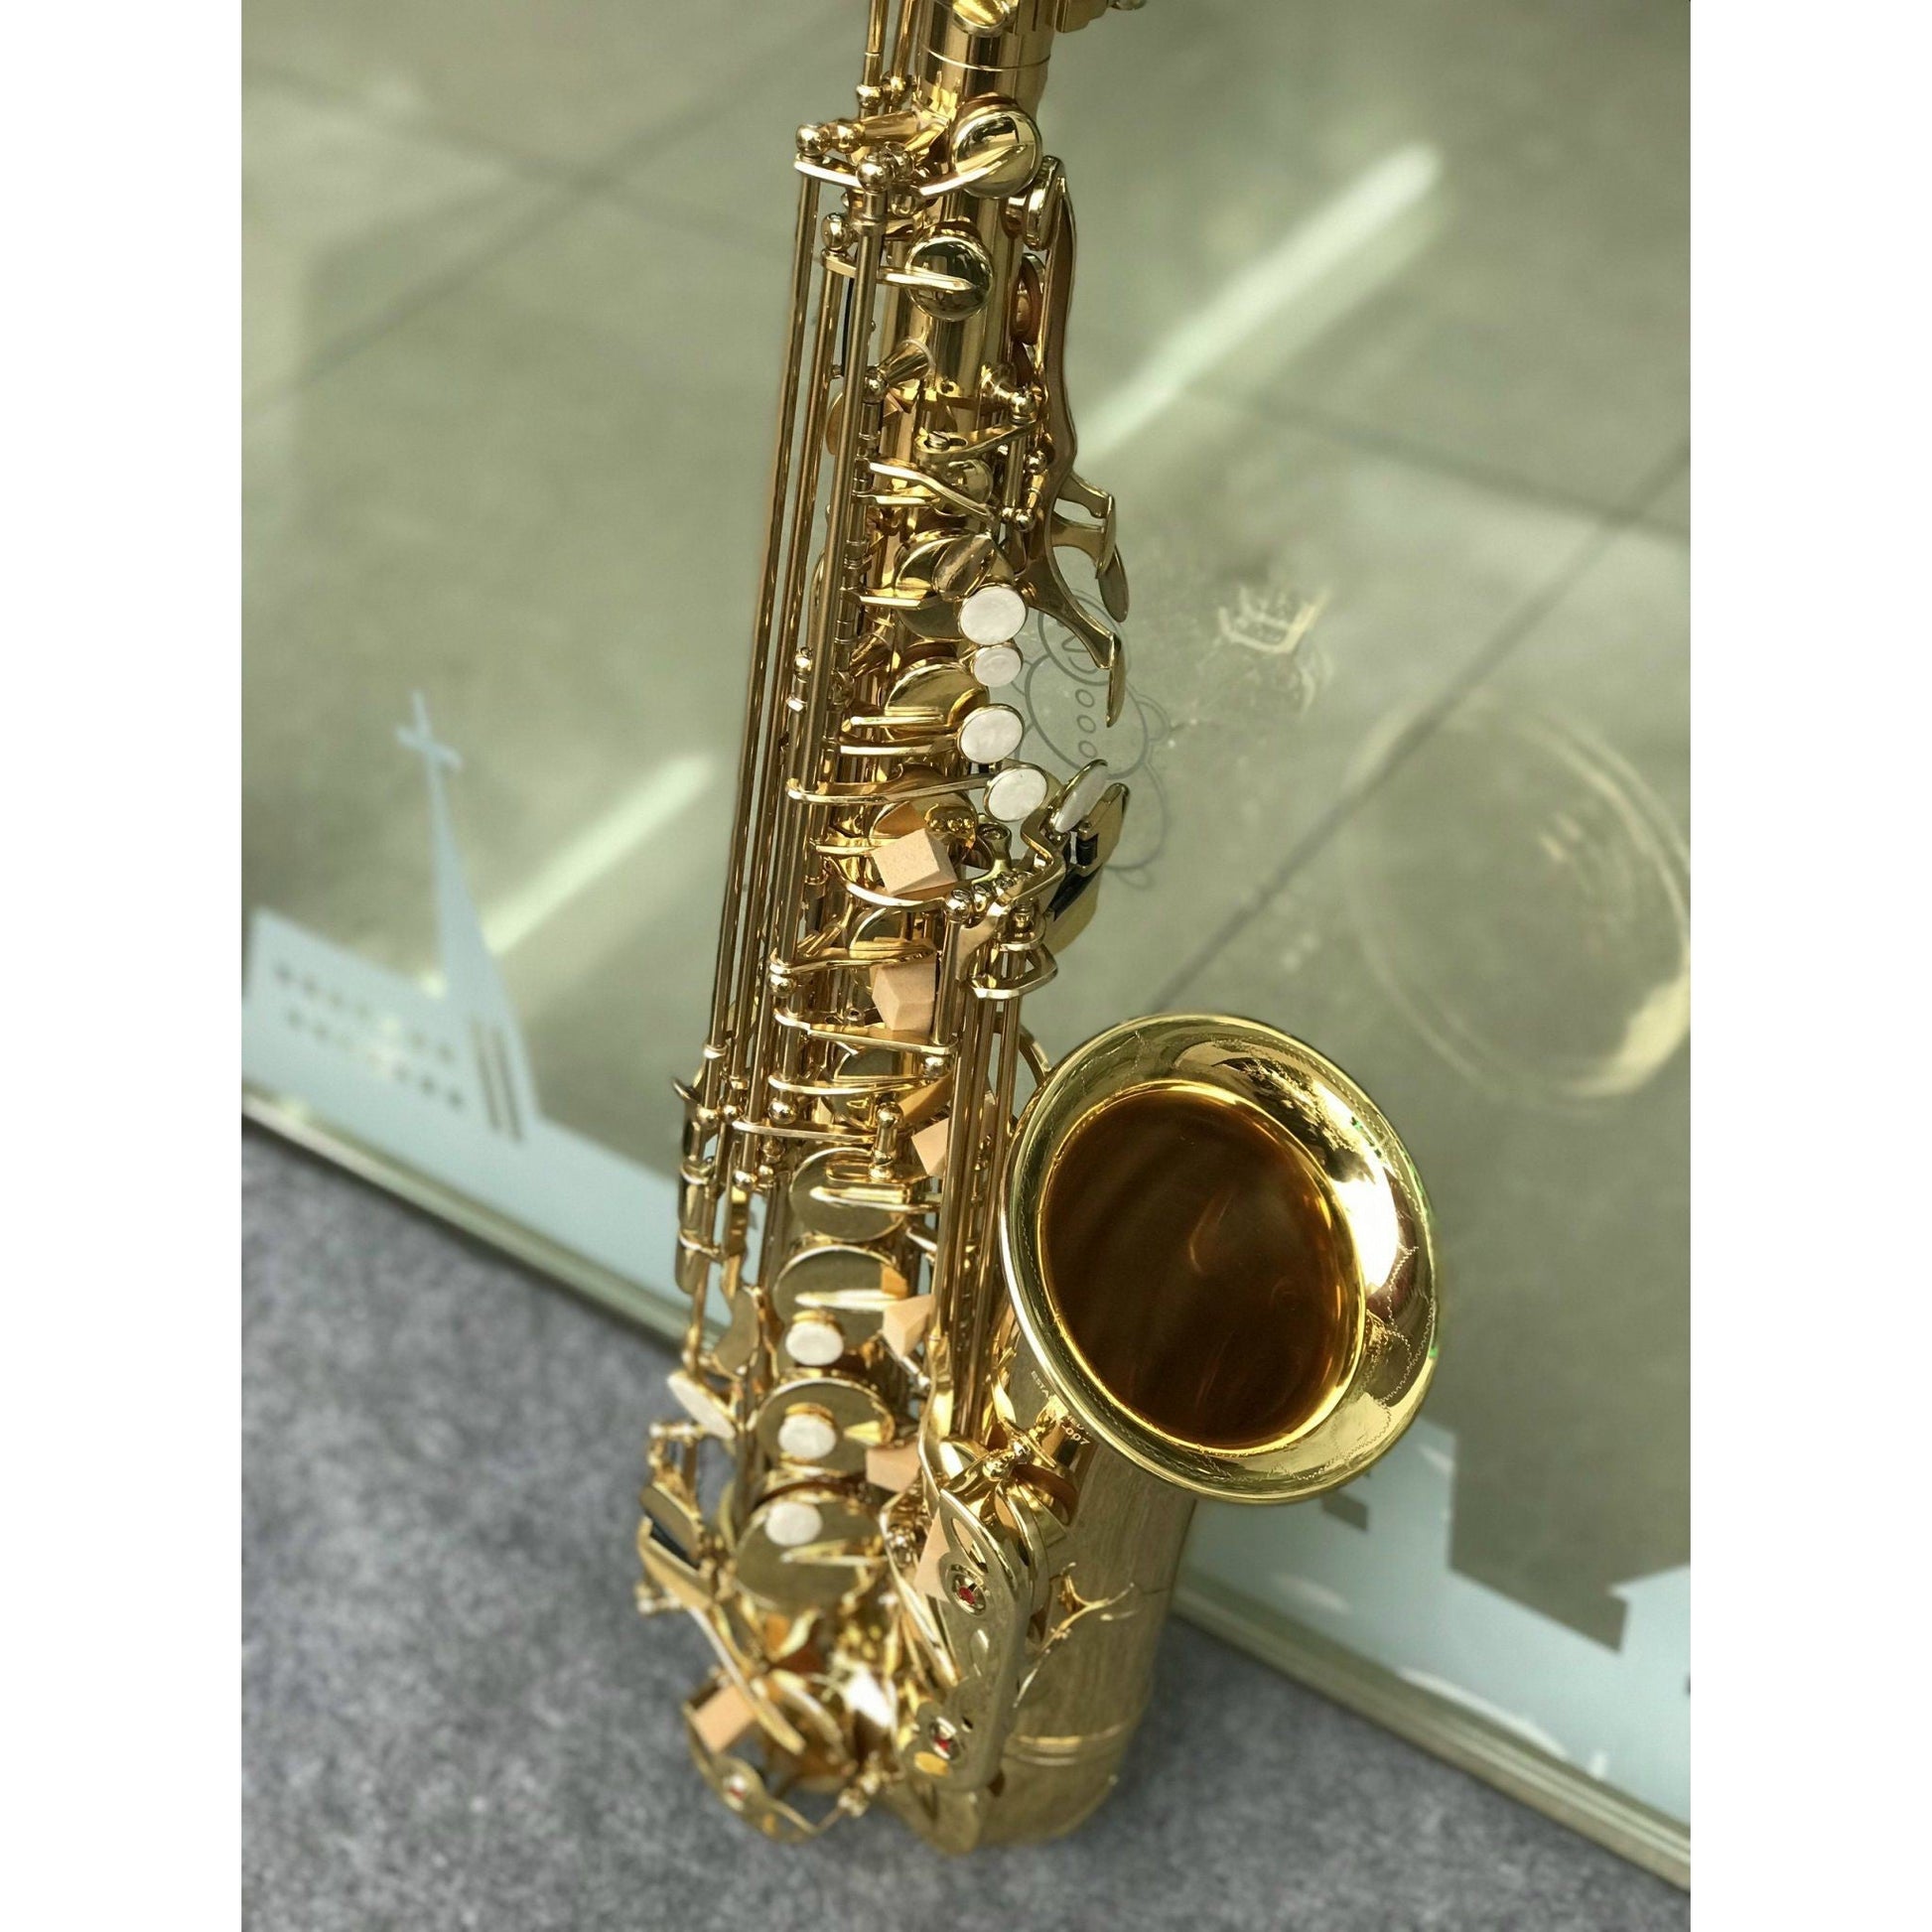 Kèn Saxophone Alto MK-007 - Việt Music